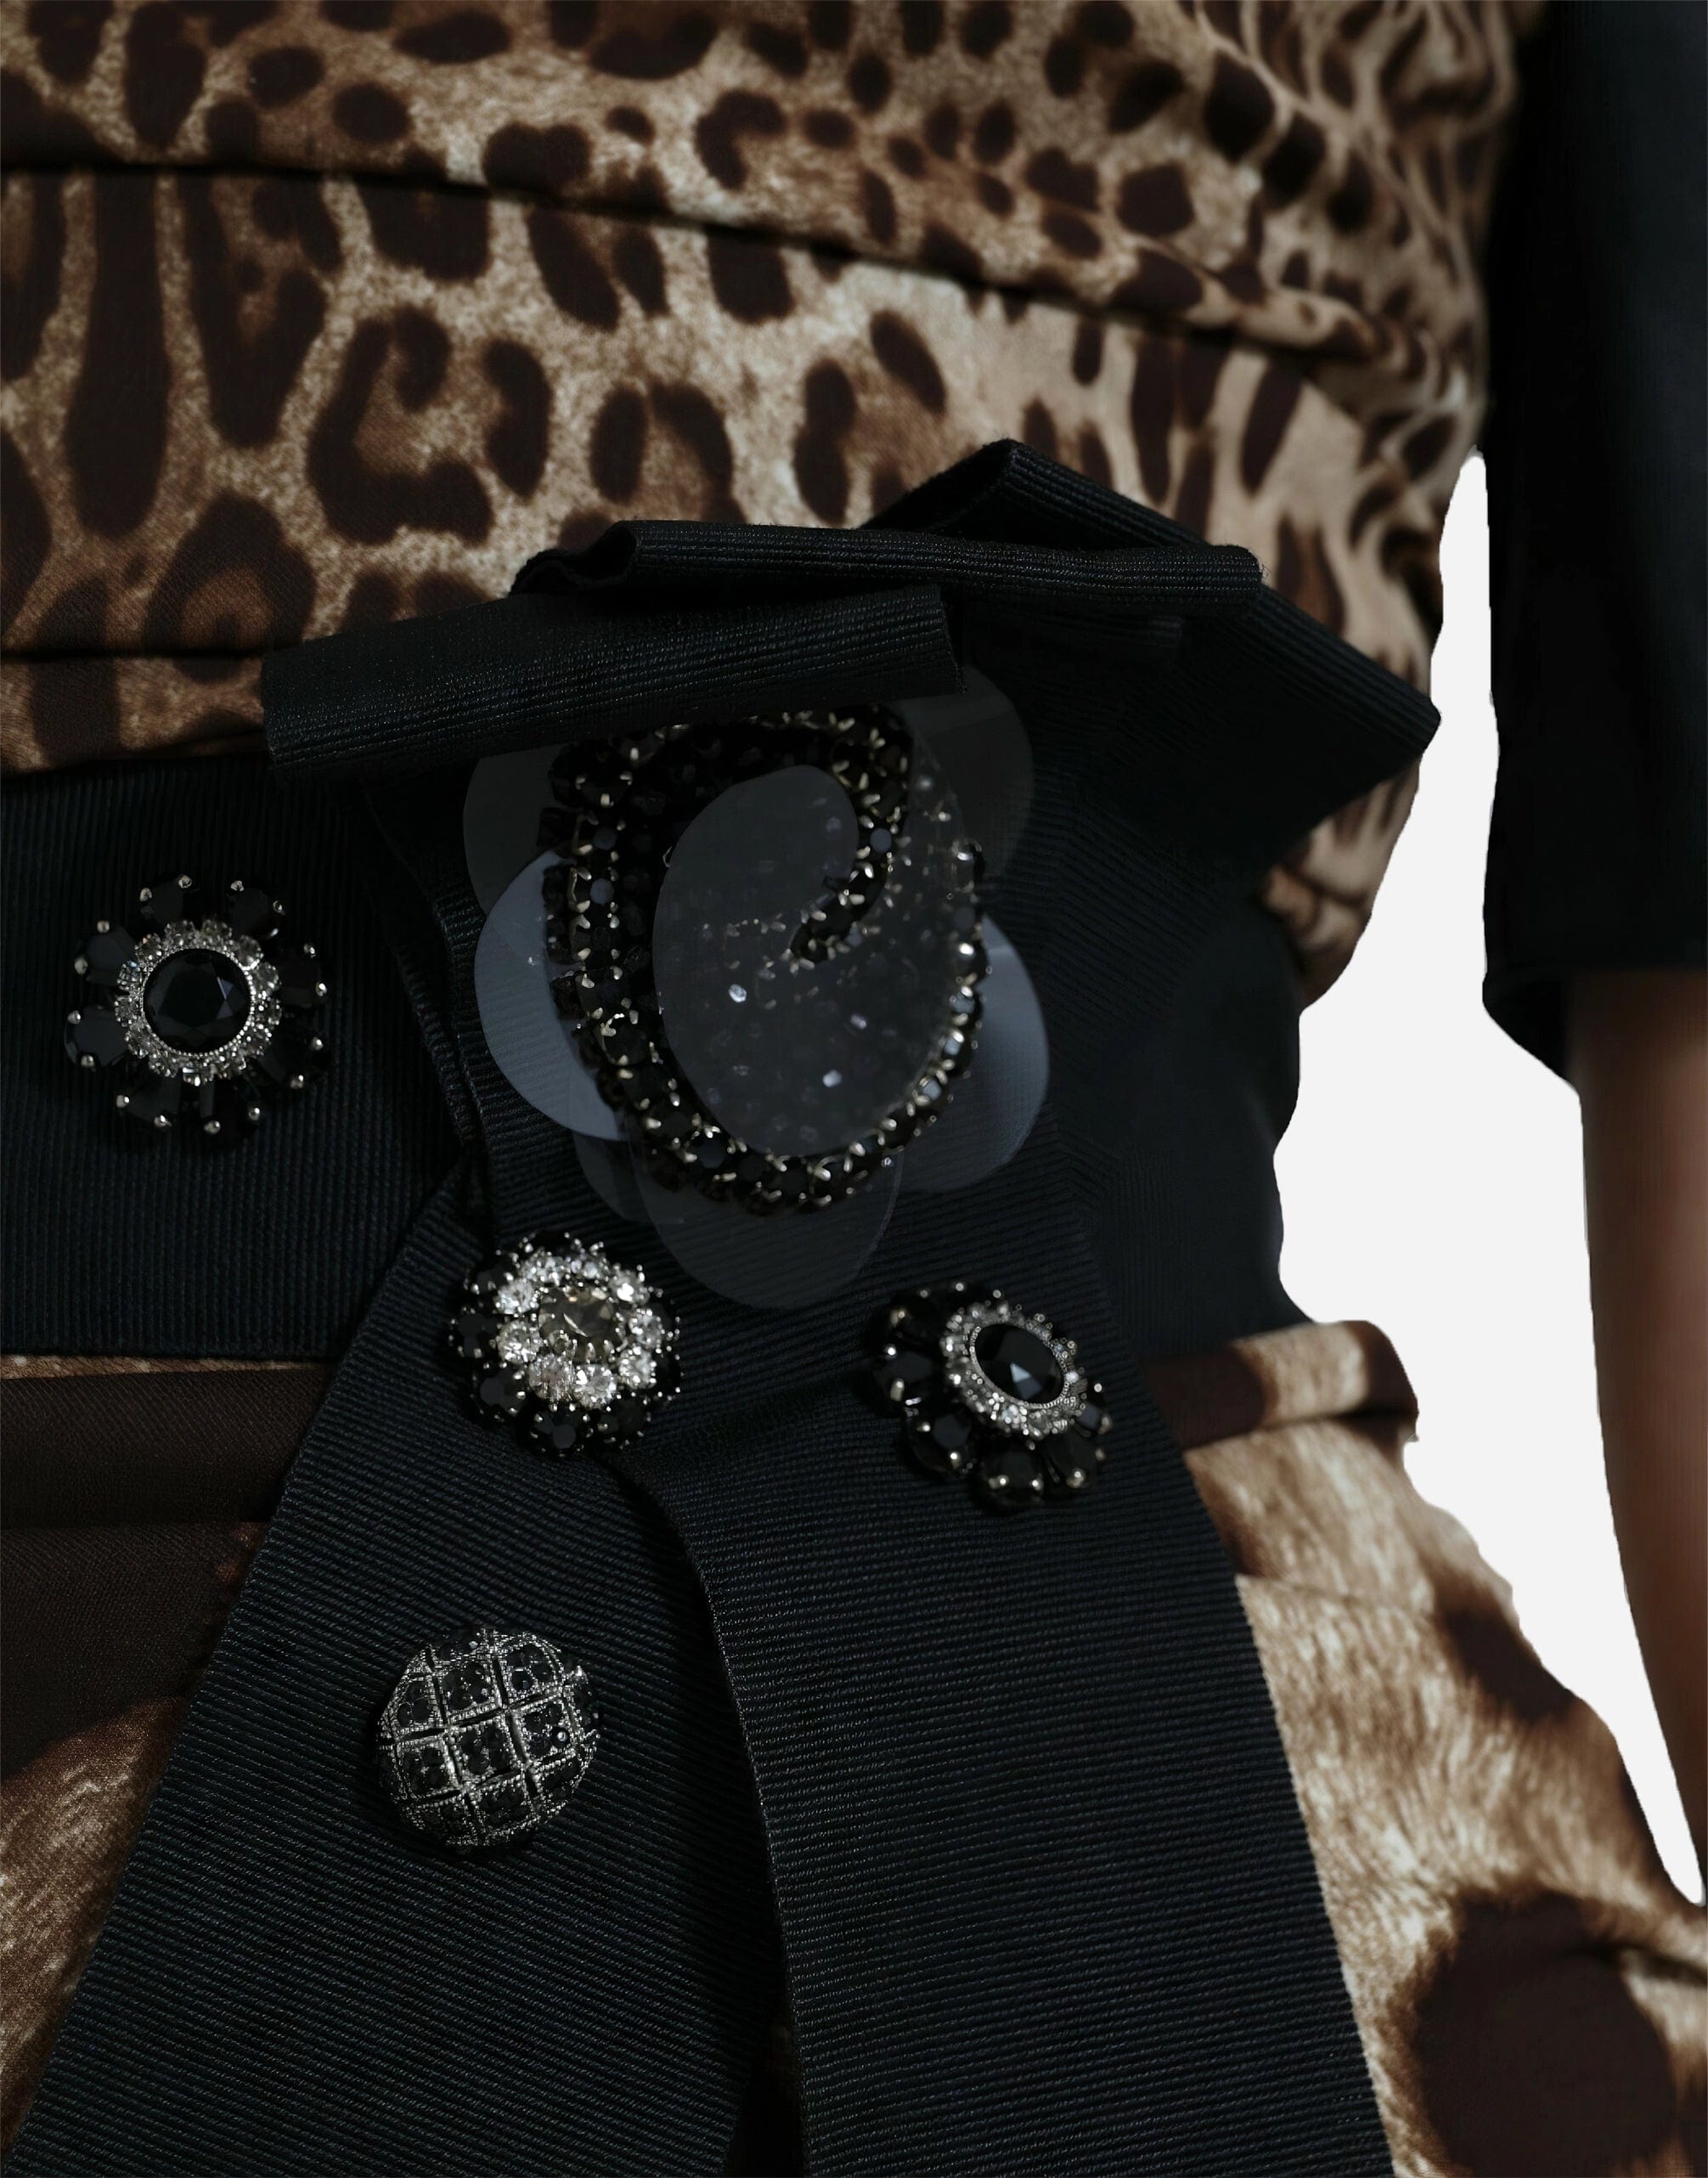 Dolce & Gabbana Leopard-Print Embellished Flared Shoulders Gown